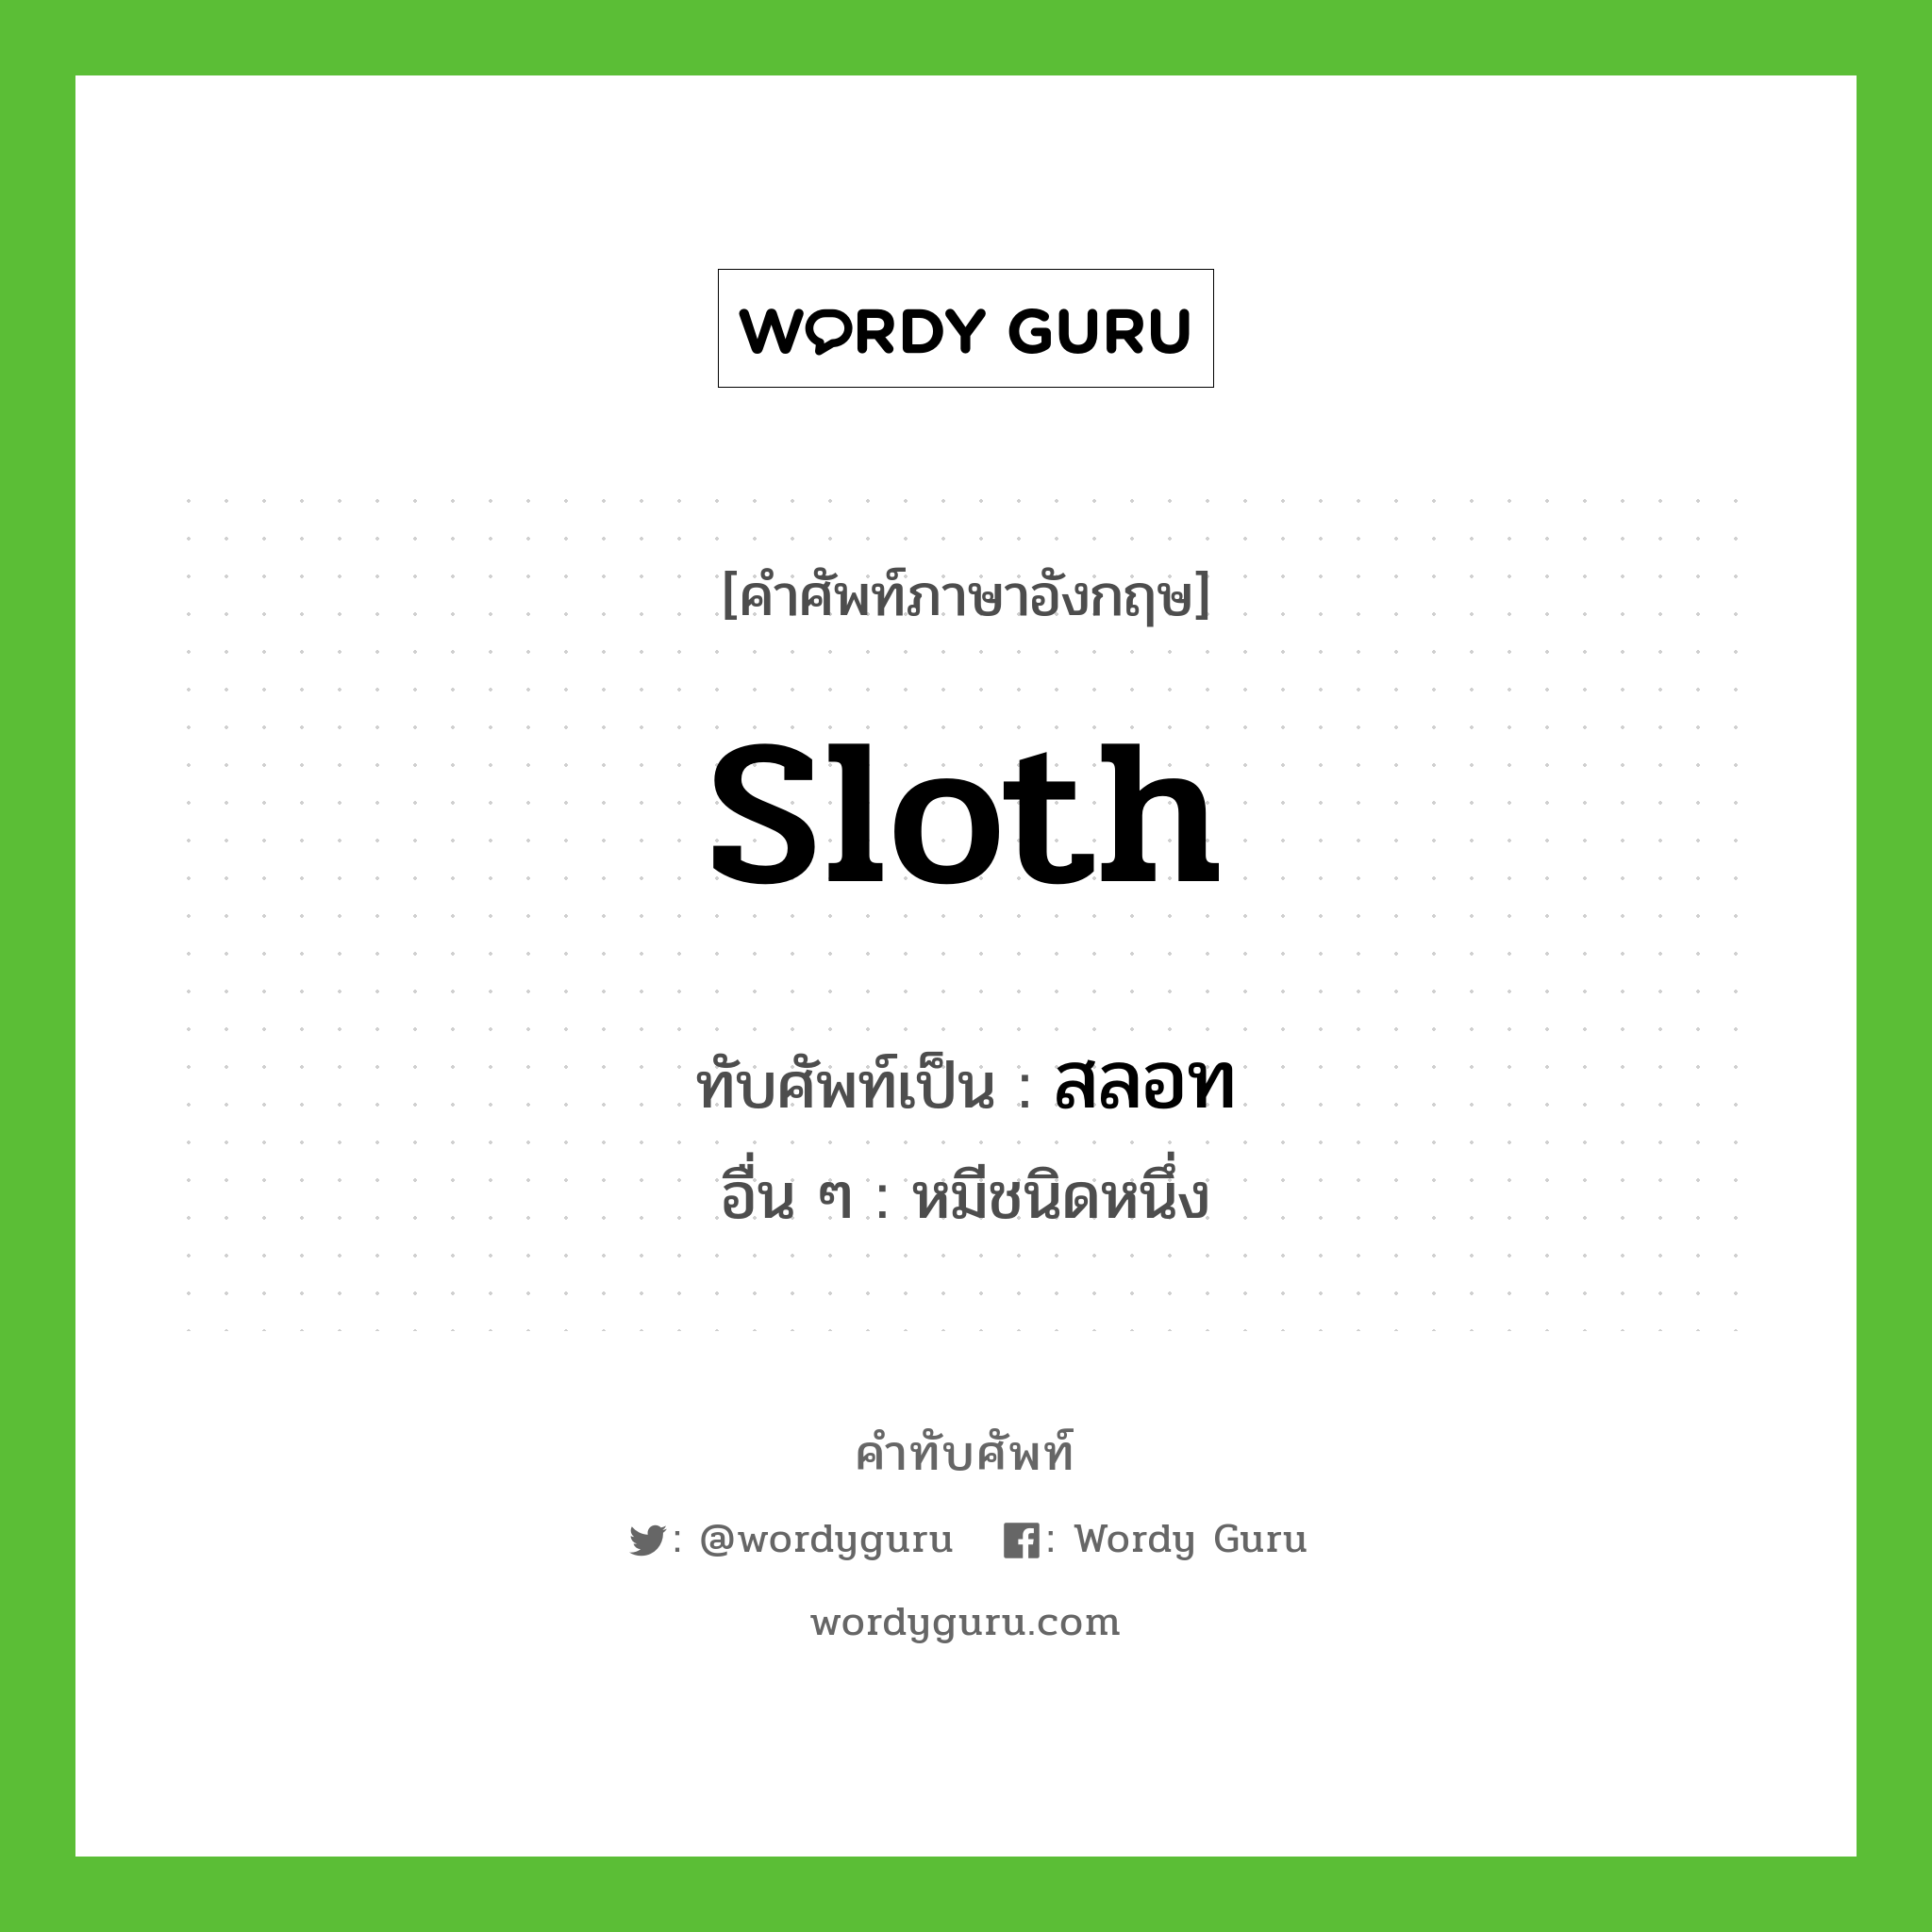 Sloth เขียนเป็นคำไทยว่าอะไร?, คำศัพท์ภาษาอังกฤษ Sloth ทับศัพท์เป็น สลอท อื่น ๆ หมีชนิดหนึ่ง